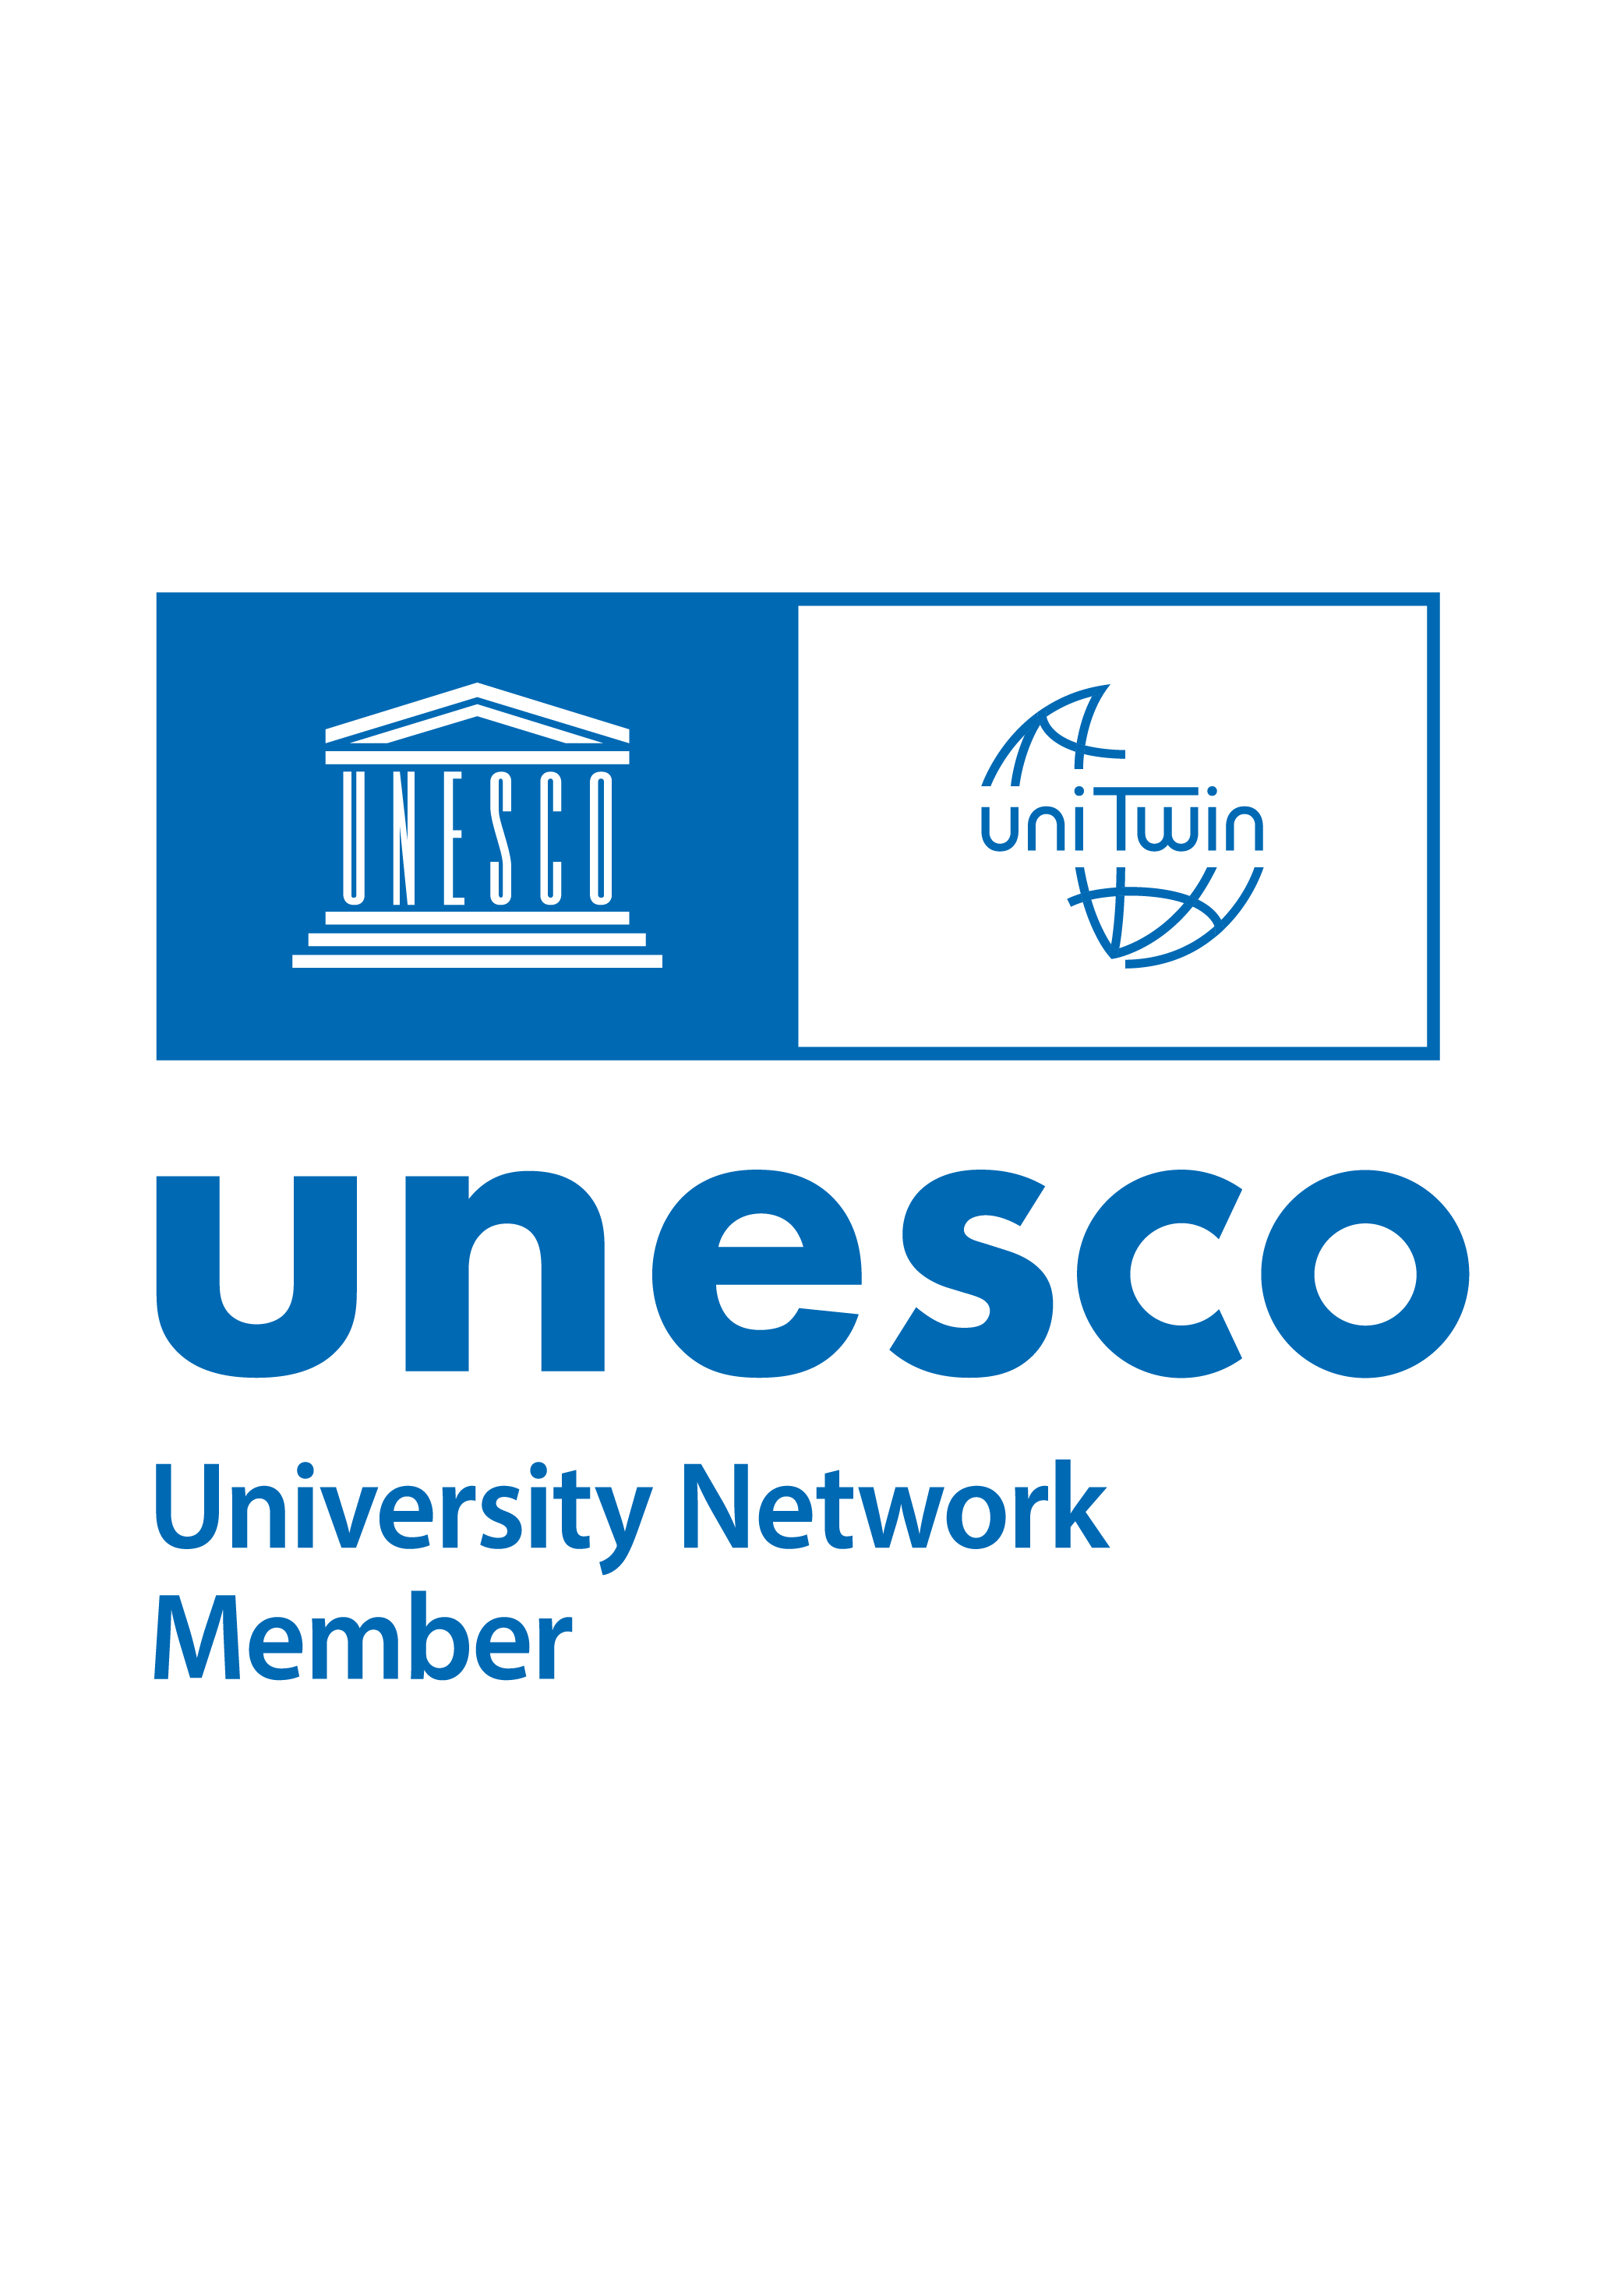 Cátedra UNESCO UniTwin - A Cidade que Educa e Transforma